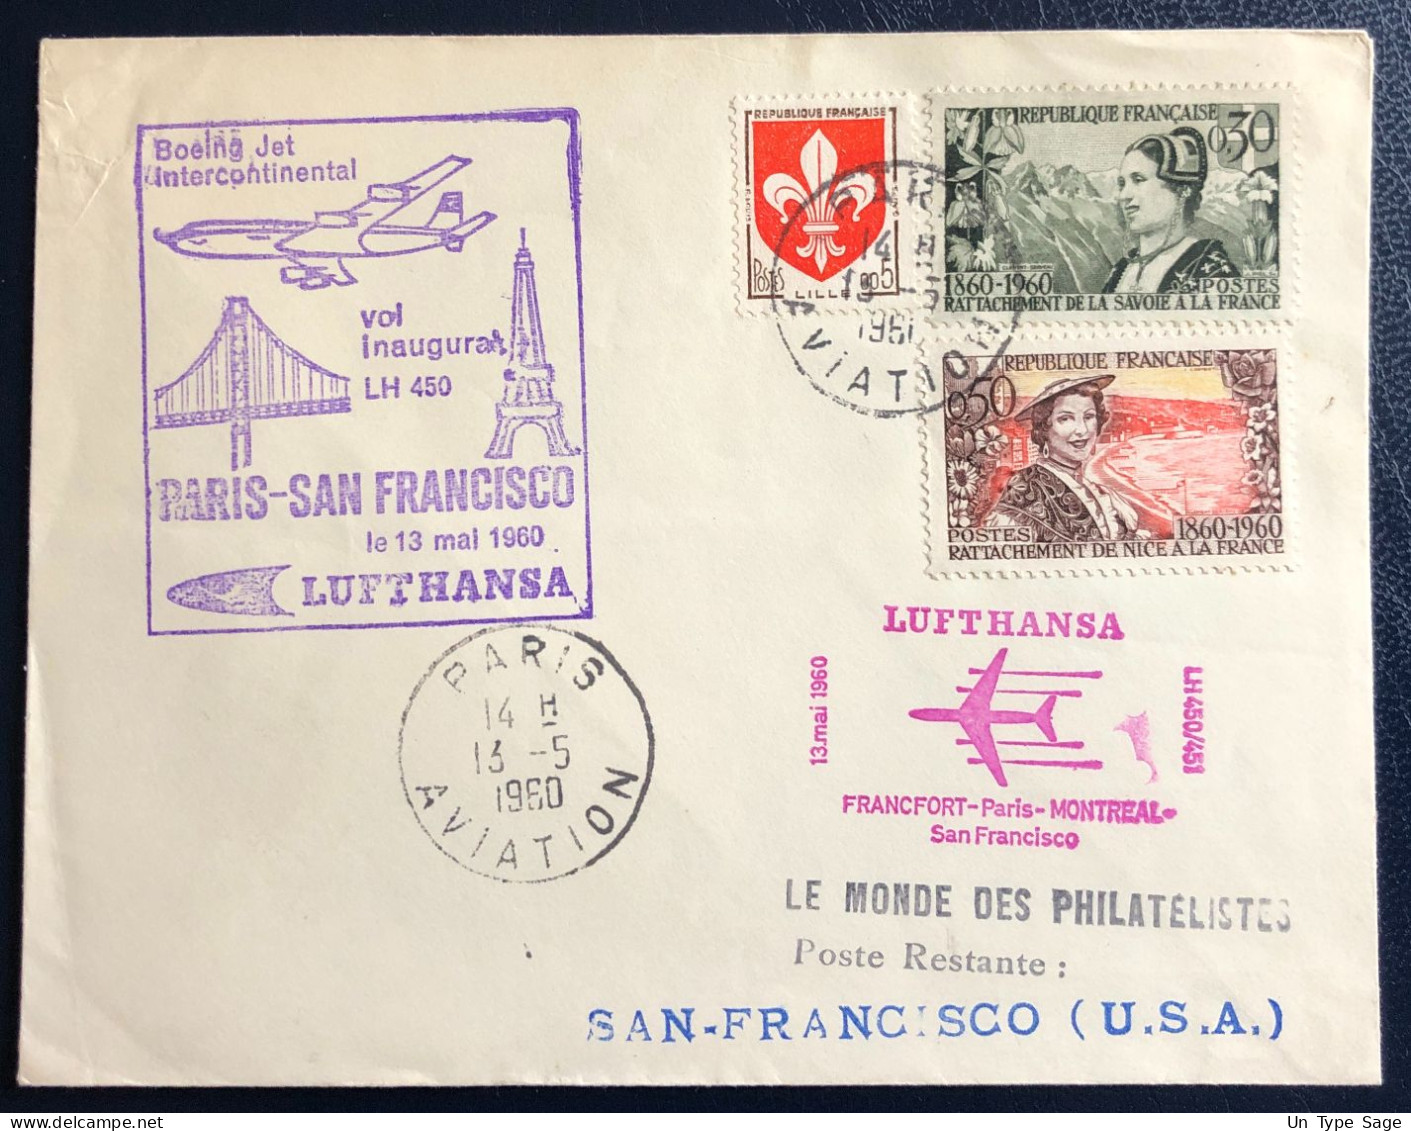 France Divers Sur Enveloppe - LUFTHANSA - Vol Inaugural PARIS SAN FRANCISCO 13.5.1960 - (B1766) - 1960-.... Covers & Documents